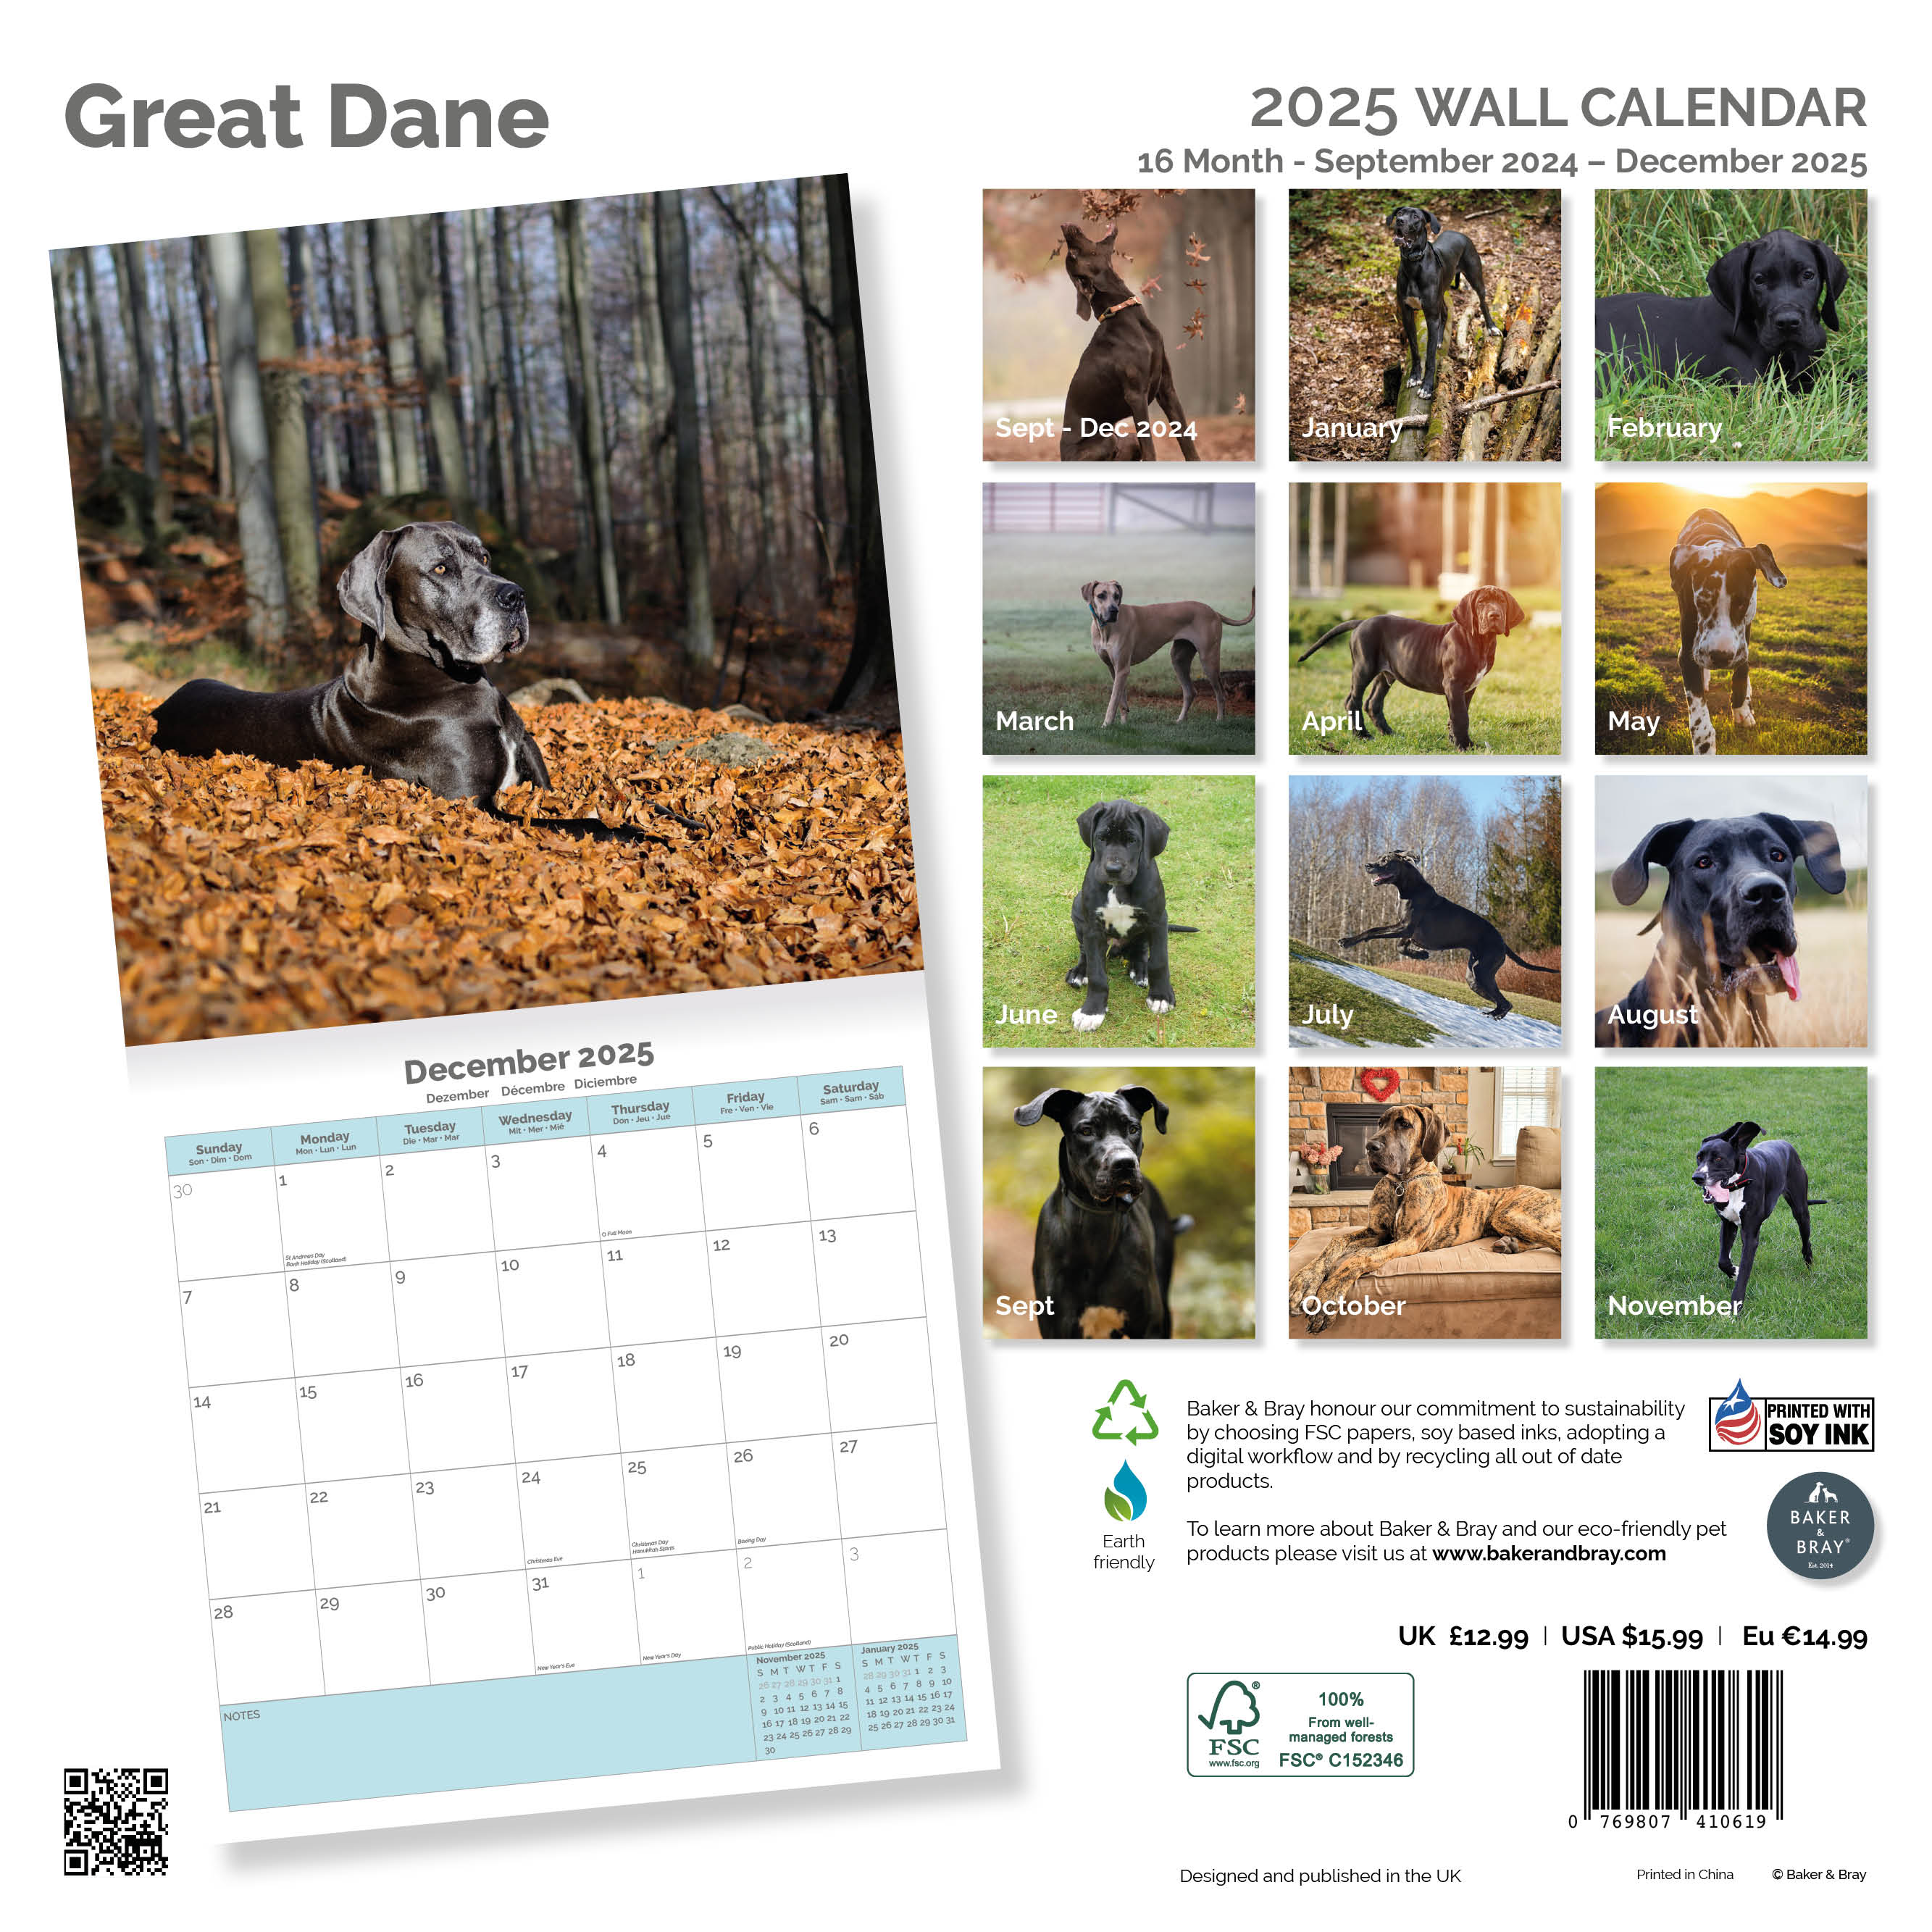 Great Dane Calendar 2025